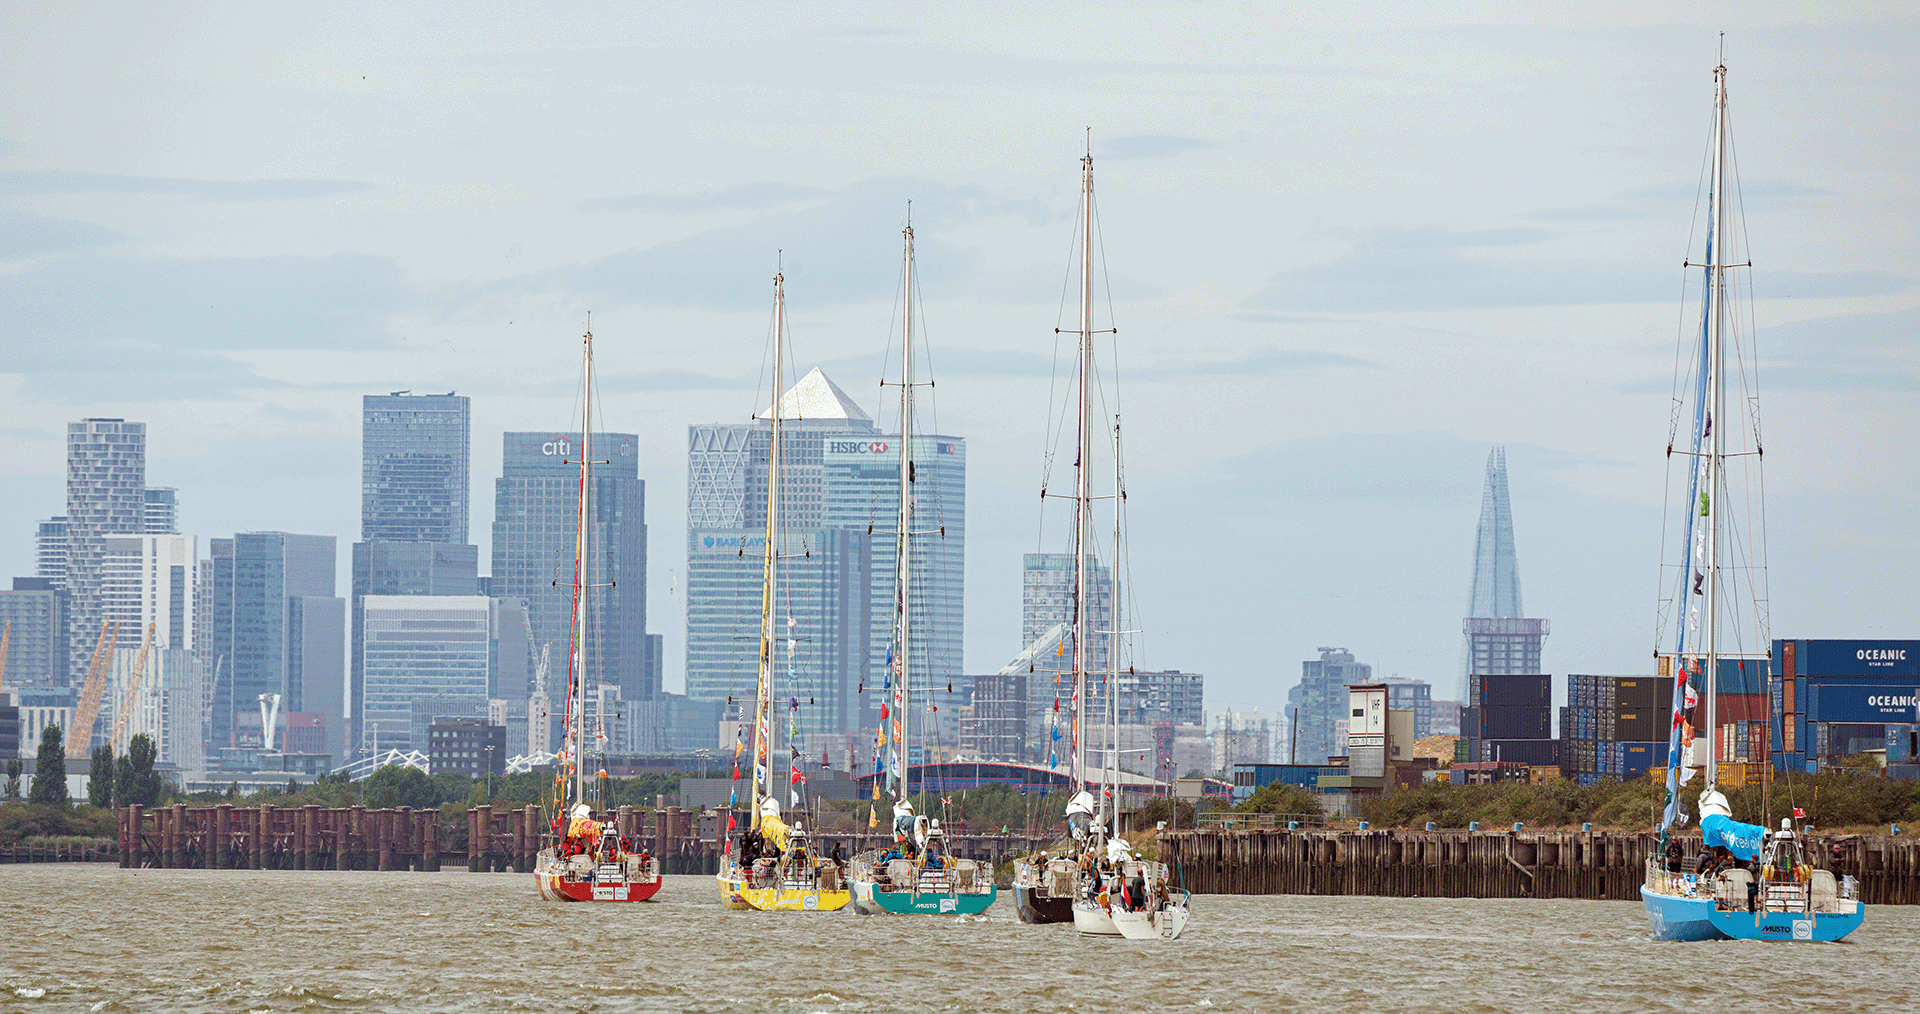 Yachts approach the Canary Wharf skyline